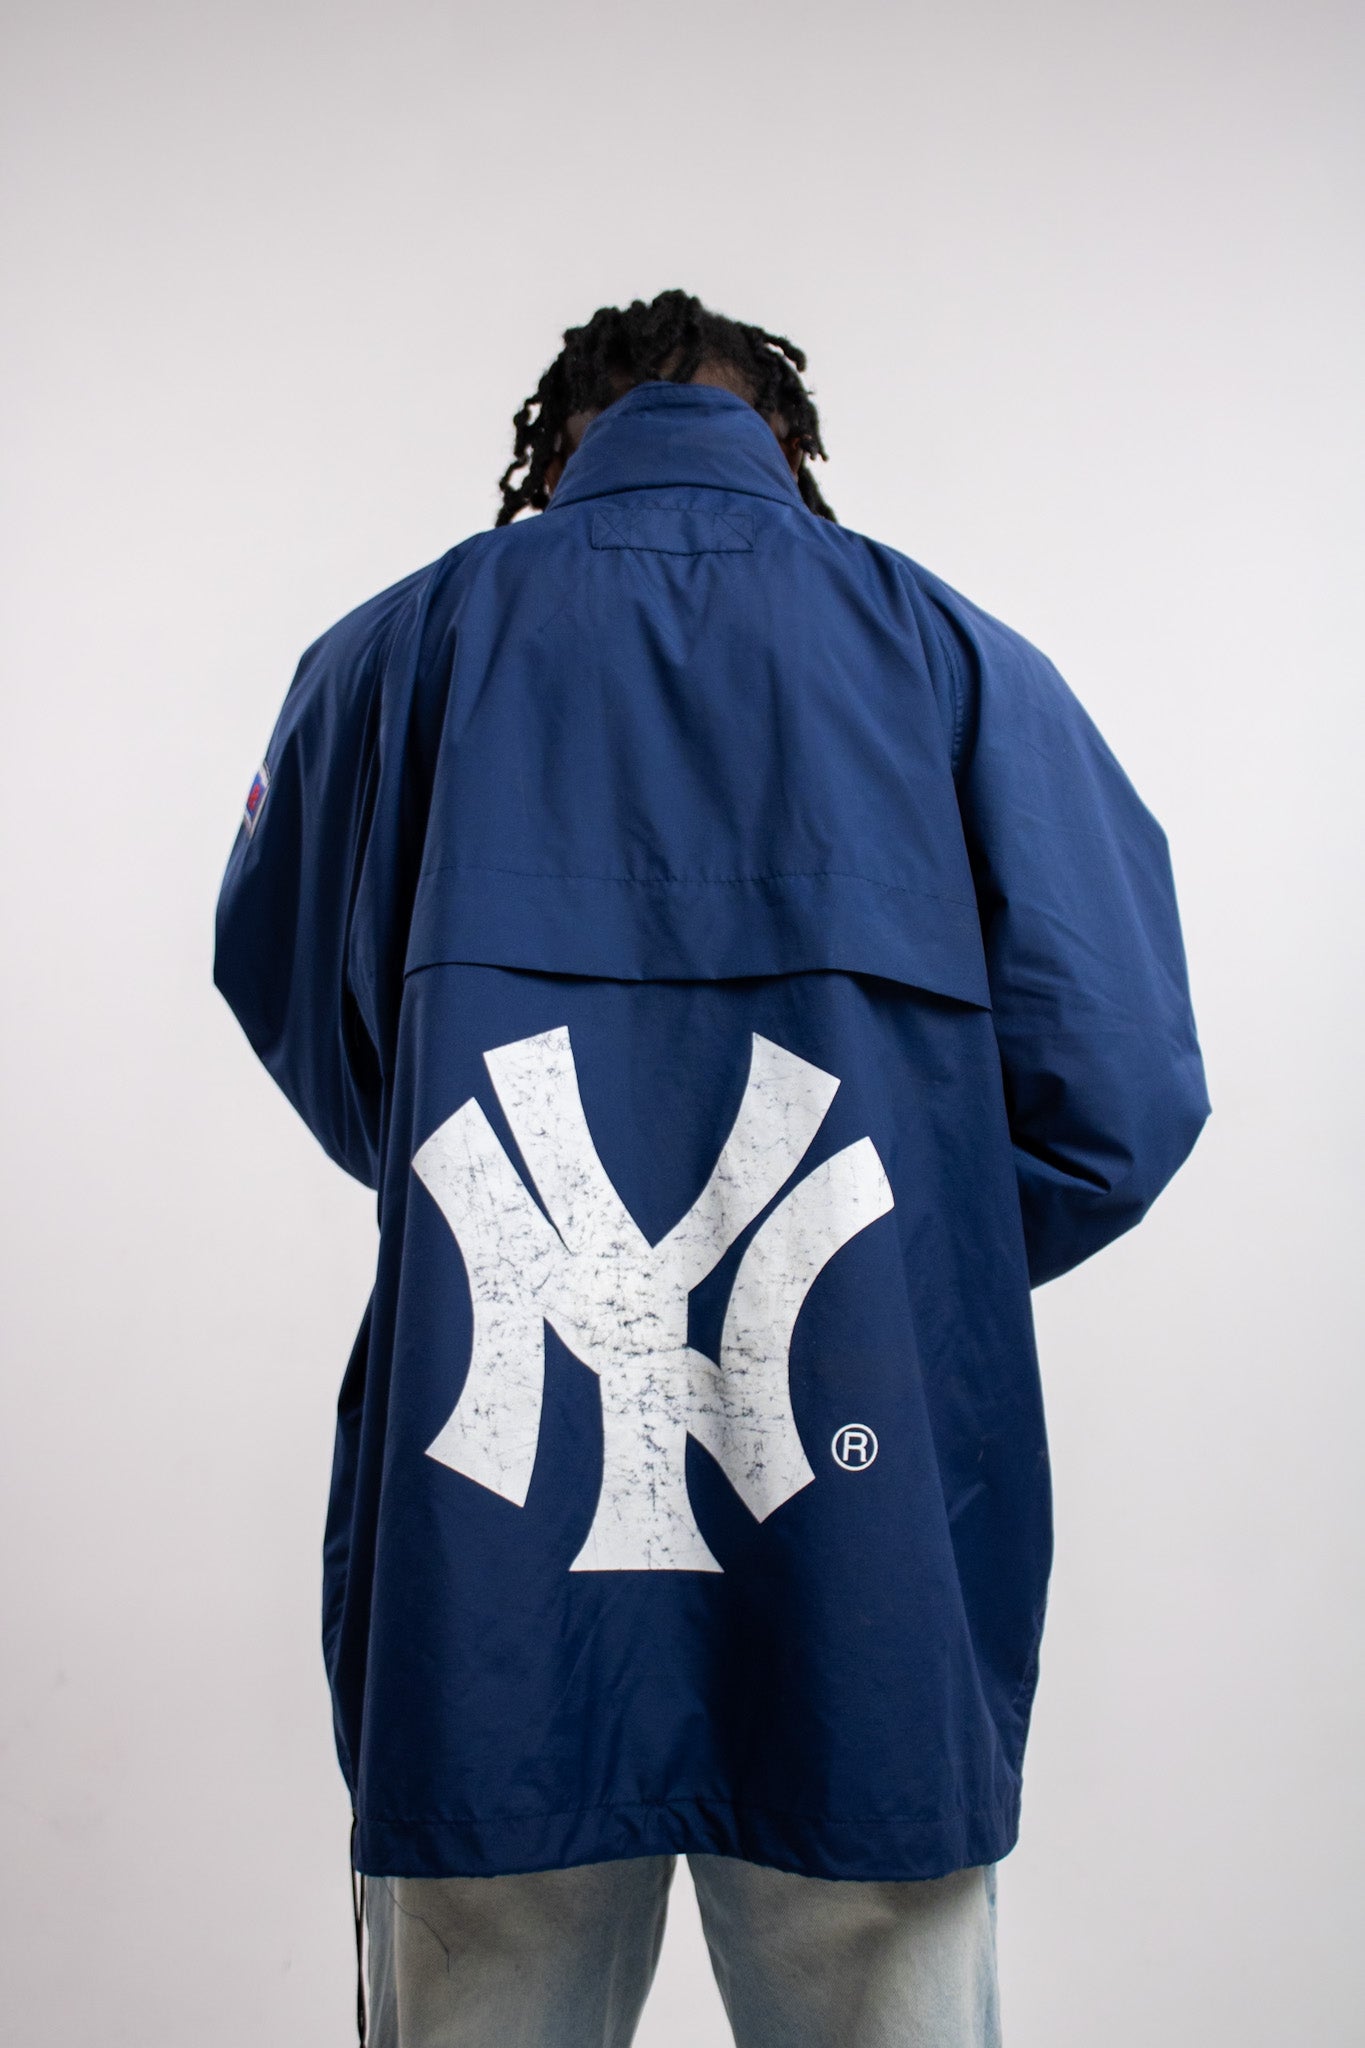 Yankees NY Half-Zip Jacket